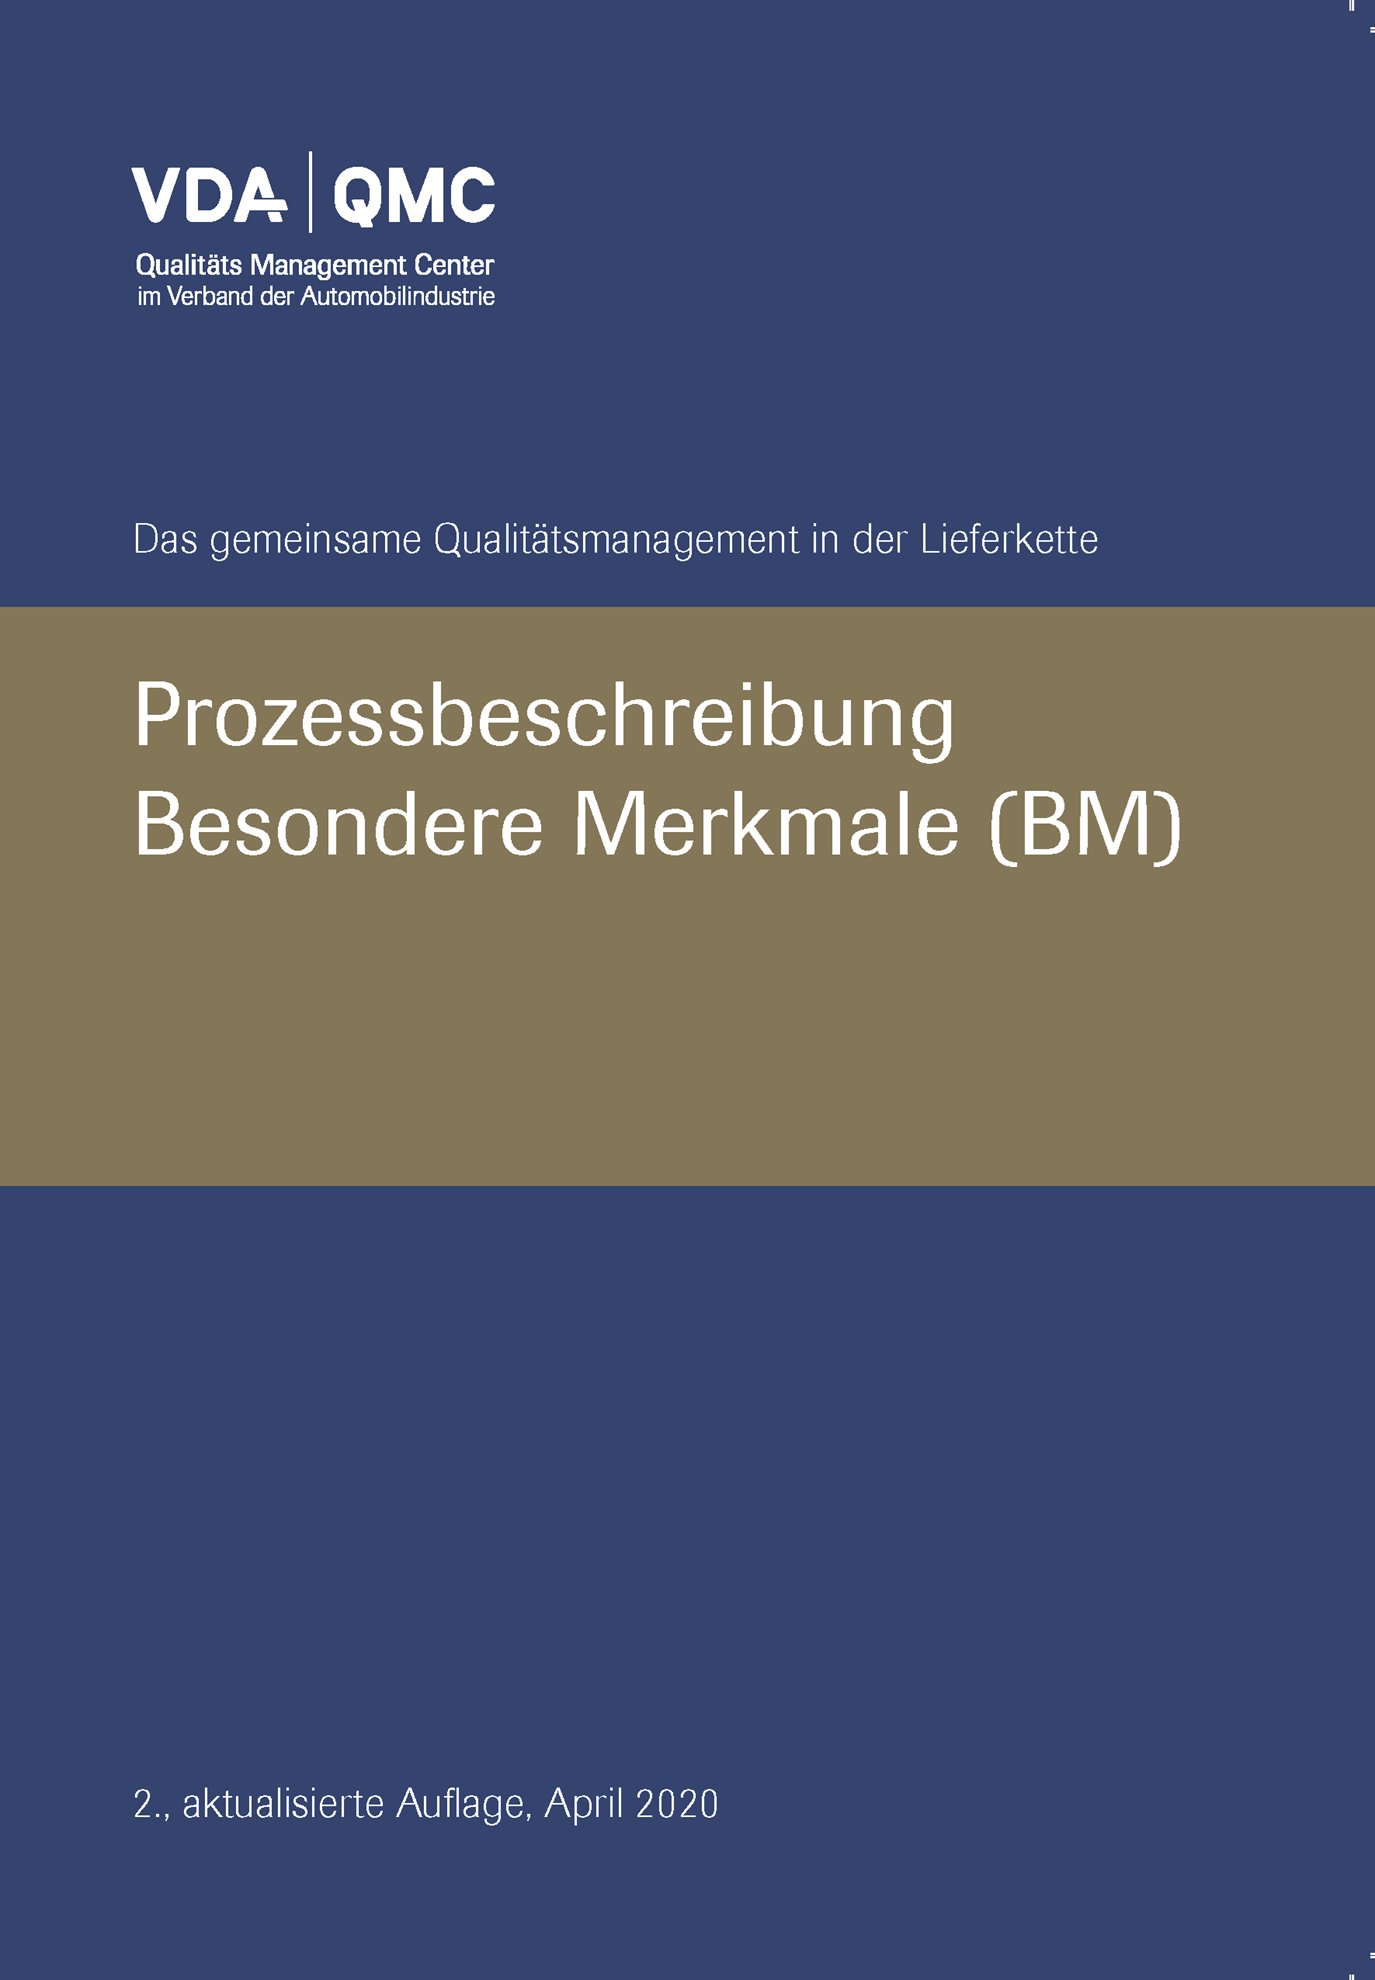 Náhľad  VDA Besondere Merkmale, Prozessbeschreibung, 2., aktualisierte Auflage, April 2020 1.4.2020